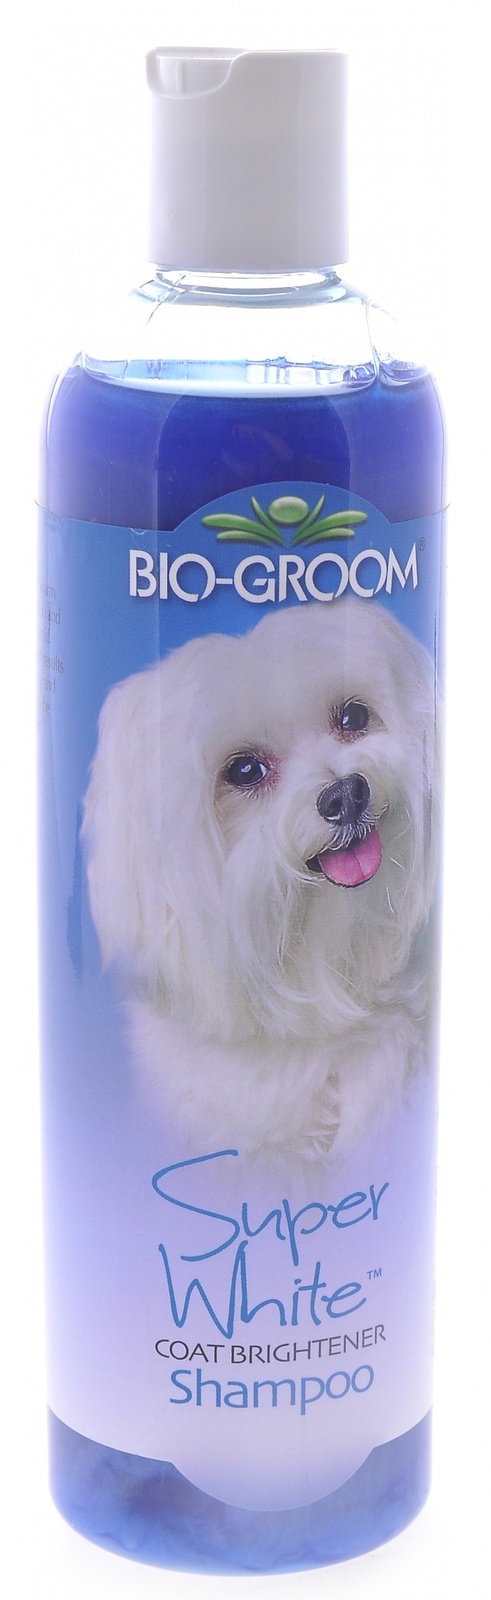 цена Biogroom Biogroom шампунь Супер Белый, концентрация 1:8, 3.2 литра готового шампуня (355 г)